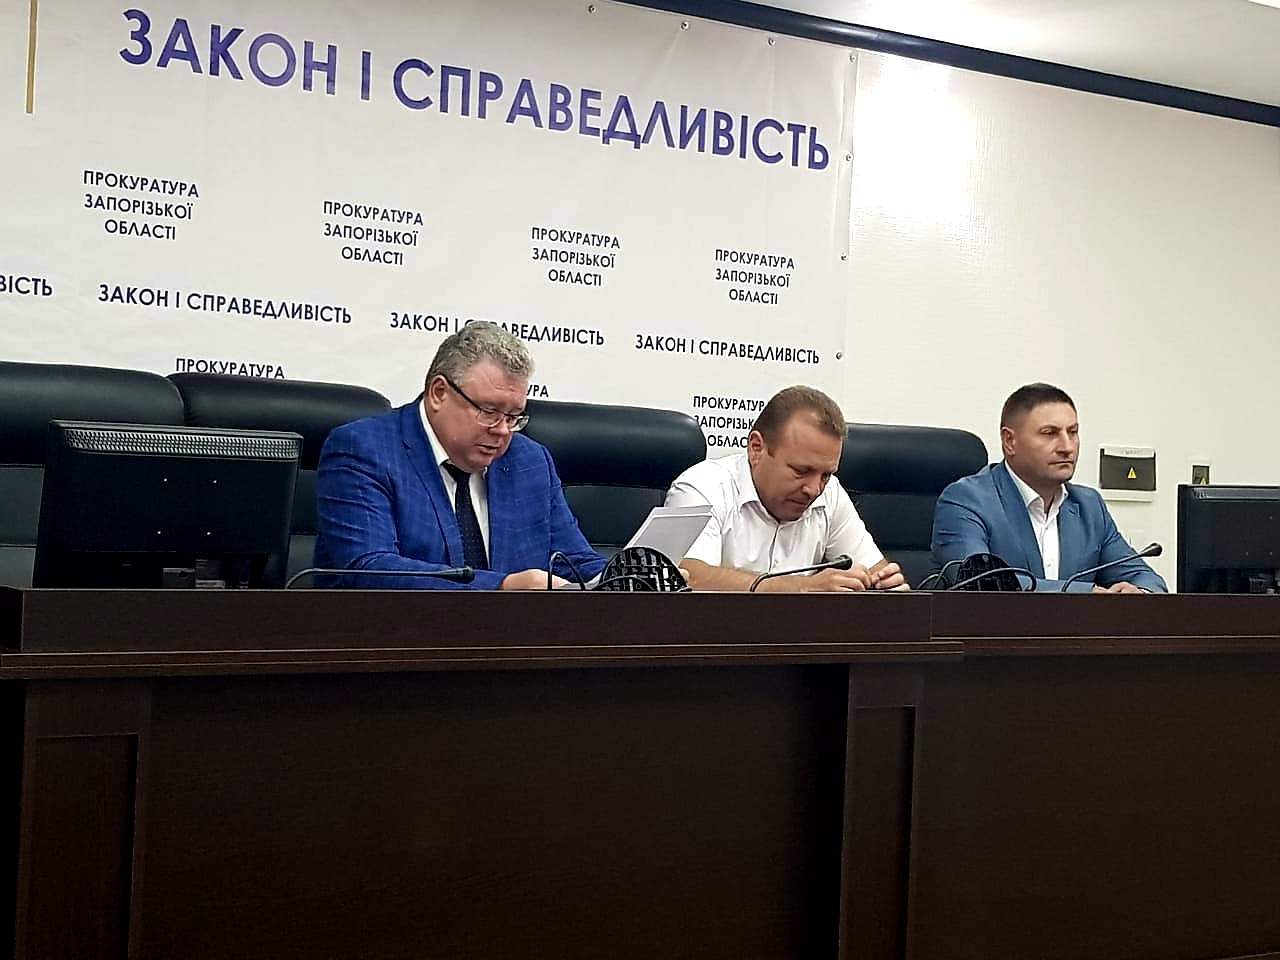 Прокурор Запорожской области Валерий Романов представил своего нового зама